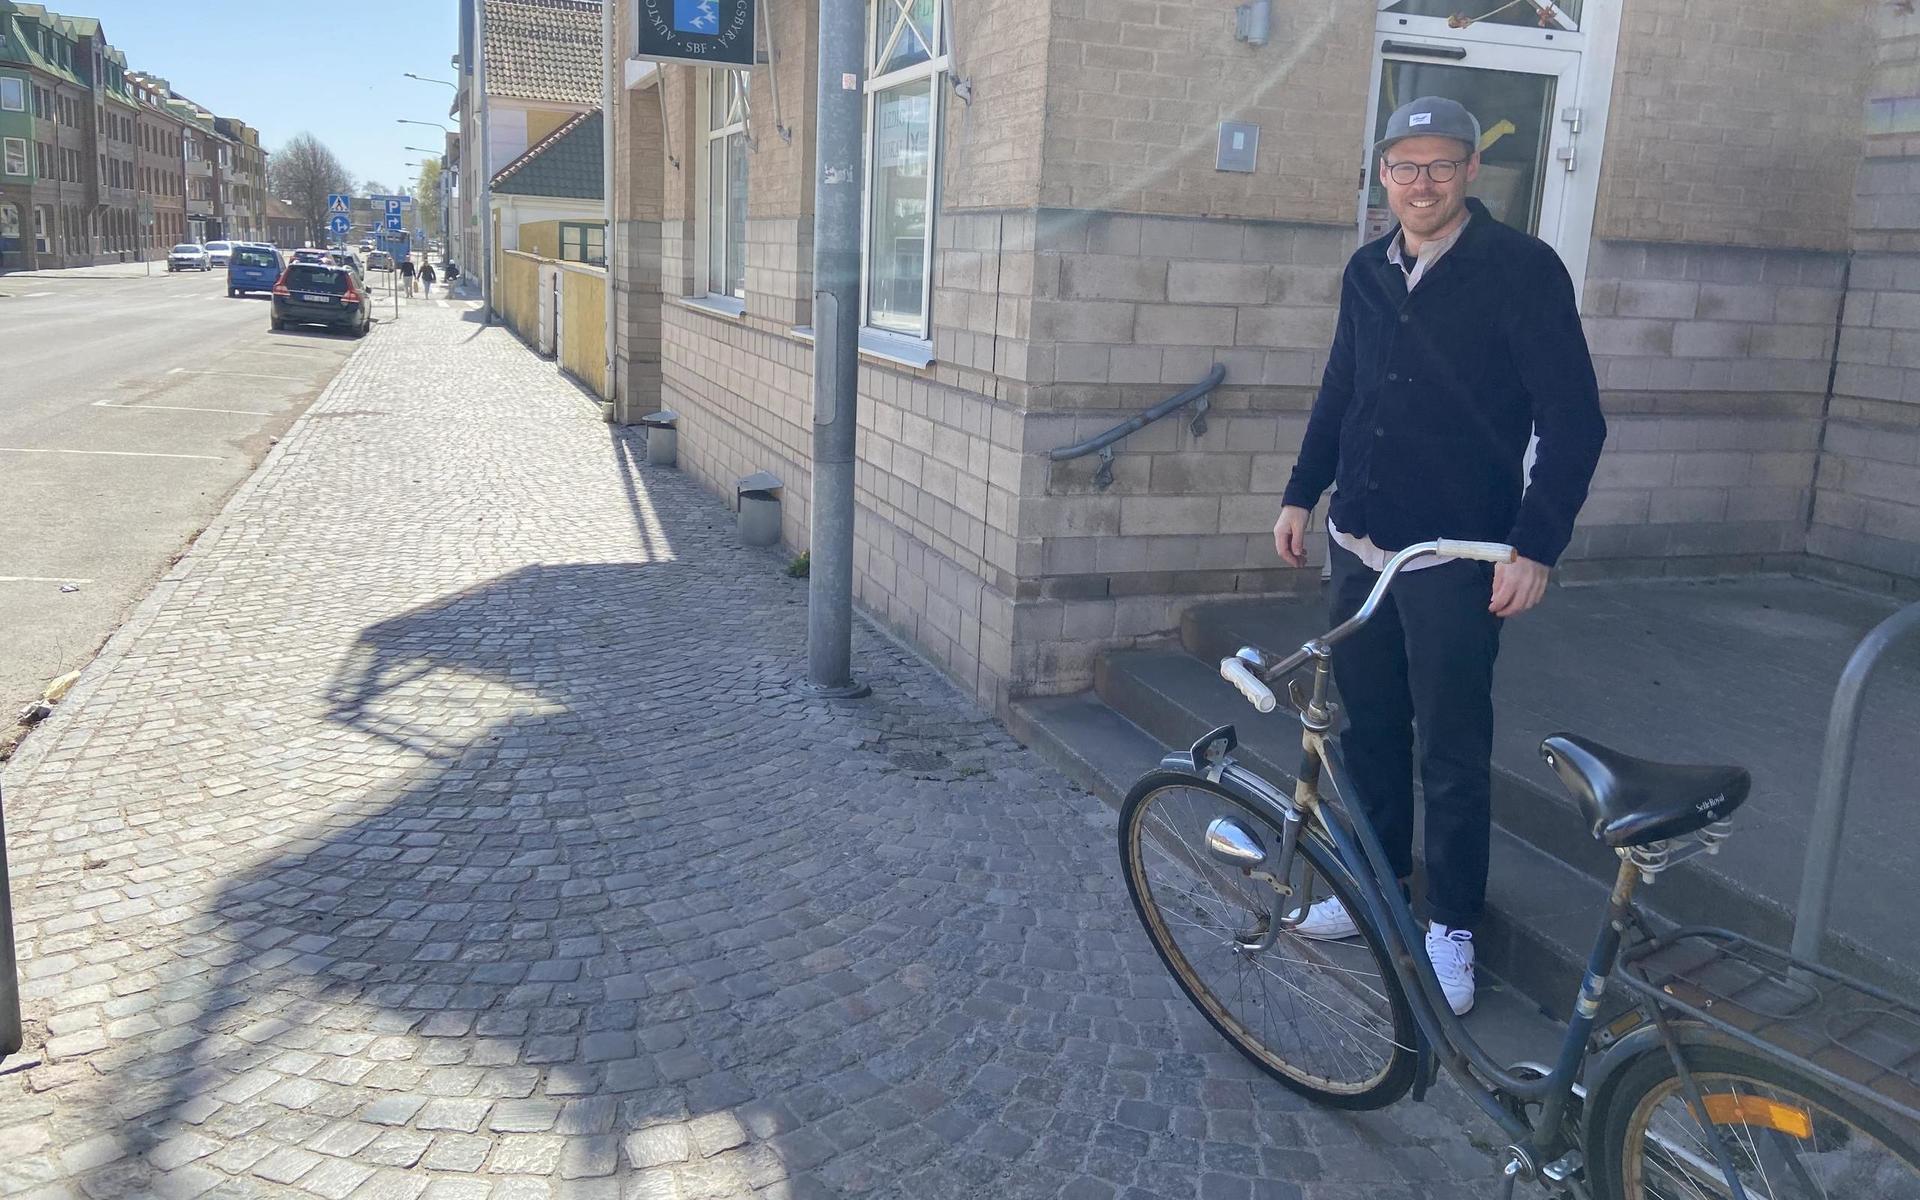 Någon ny företagsnisch mot cykel blir det inte den här gången för Johan Feldt. ”Just nu cyklar jag bara själv”, säger han.